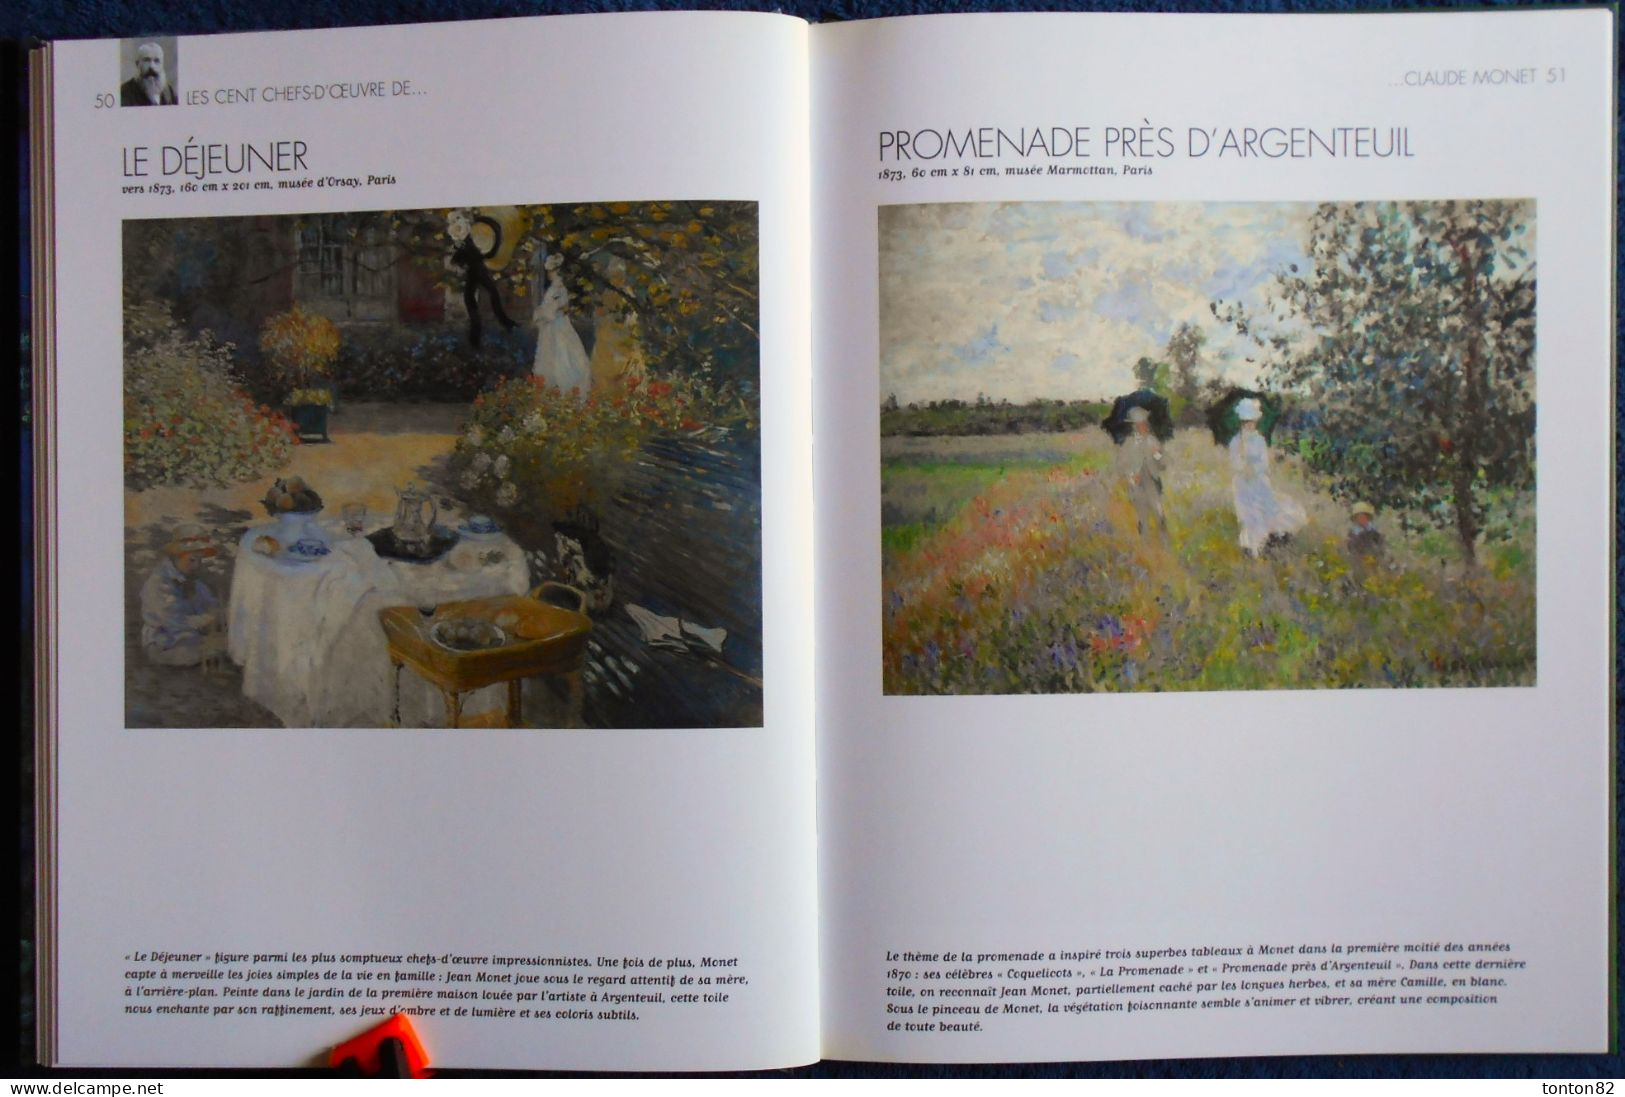 Les Cent Chefs-d'œuvre de CLAUDE MONET - La nature comme atelier - Éditions Atlas - ( 2009 ) .